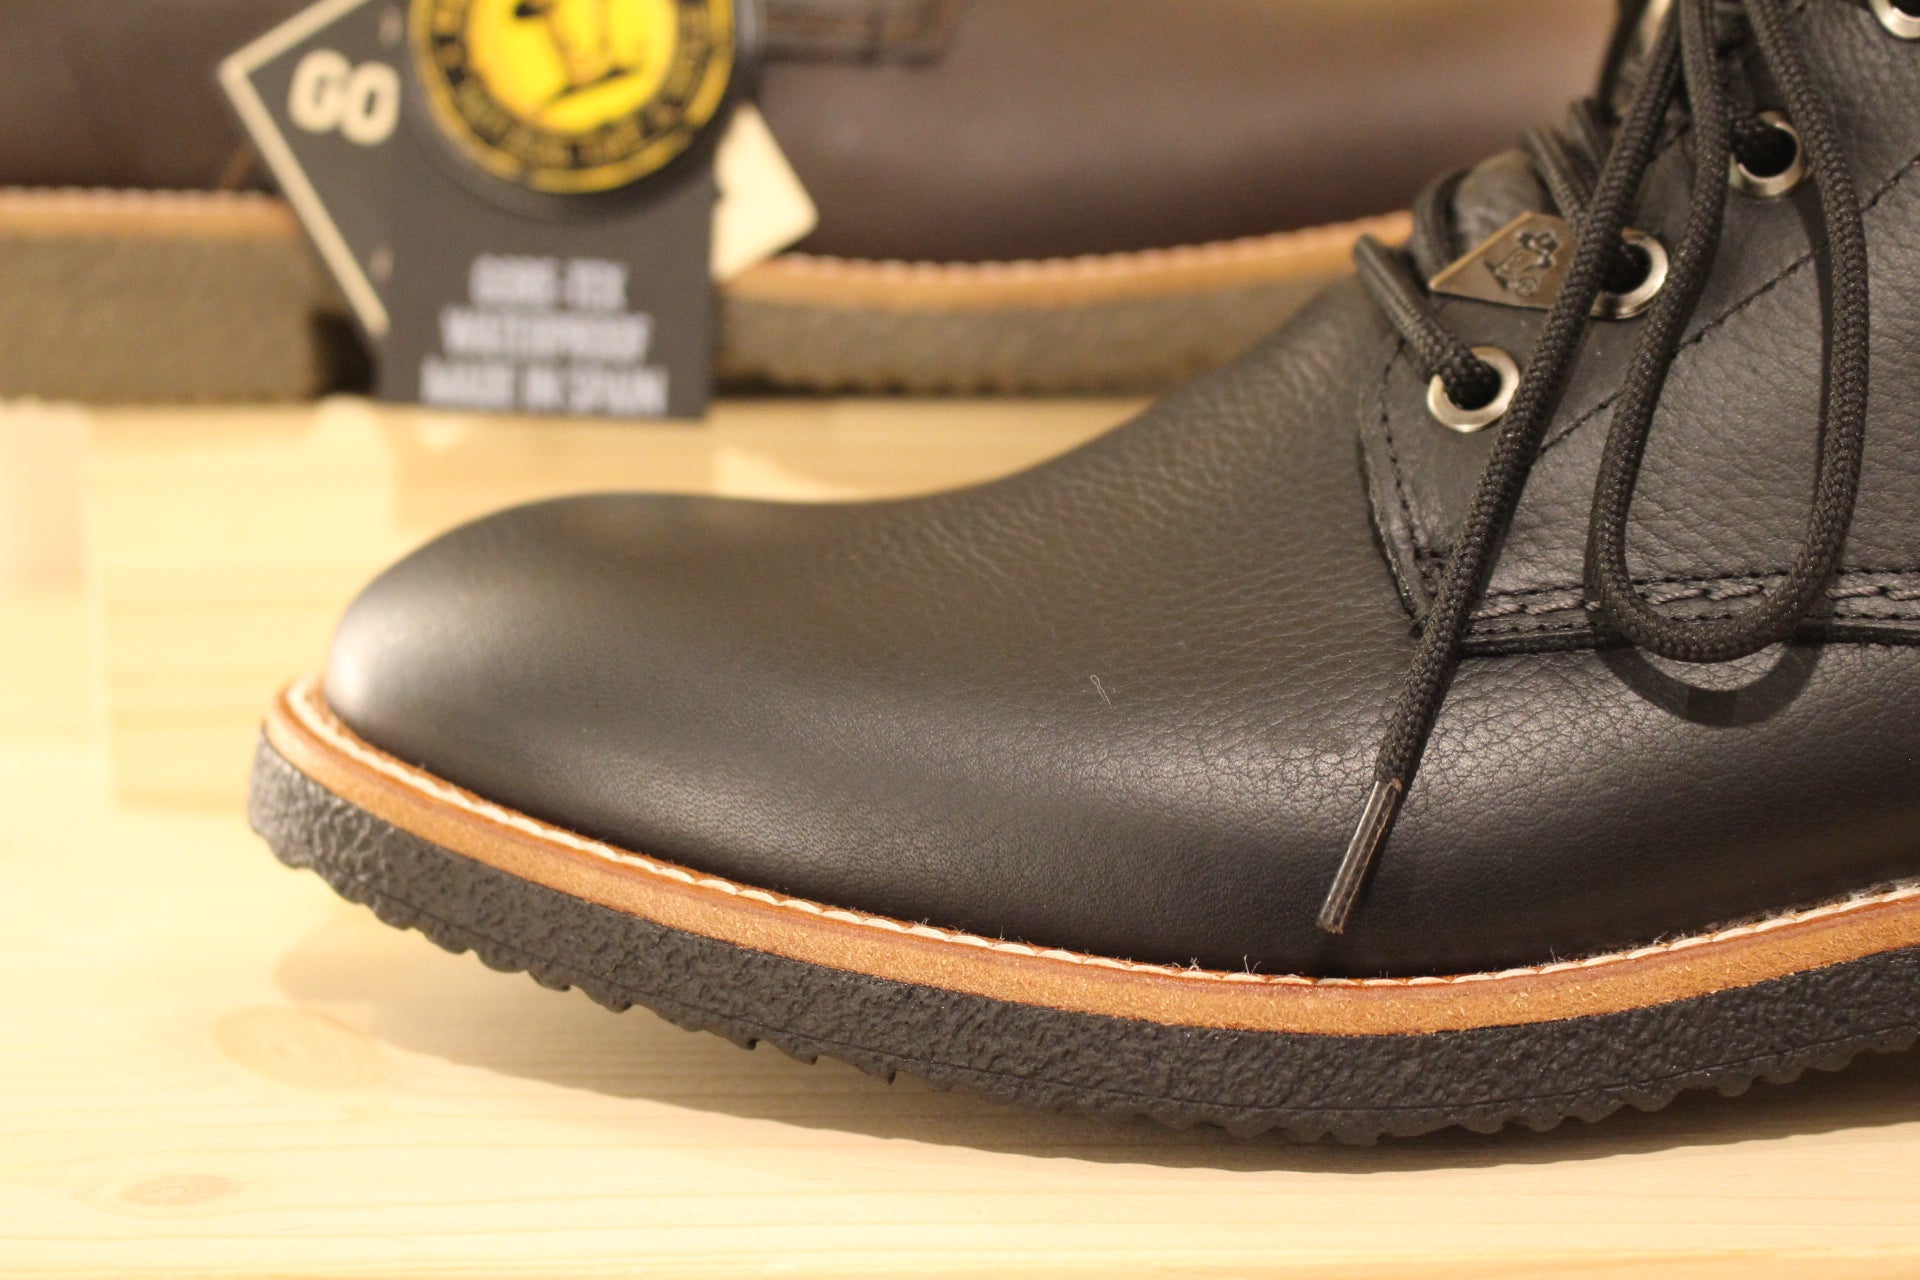 Chaussures cuir gras noir ou marron traité waterproof PANAMA JACK